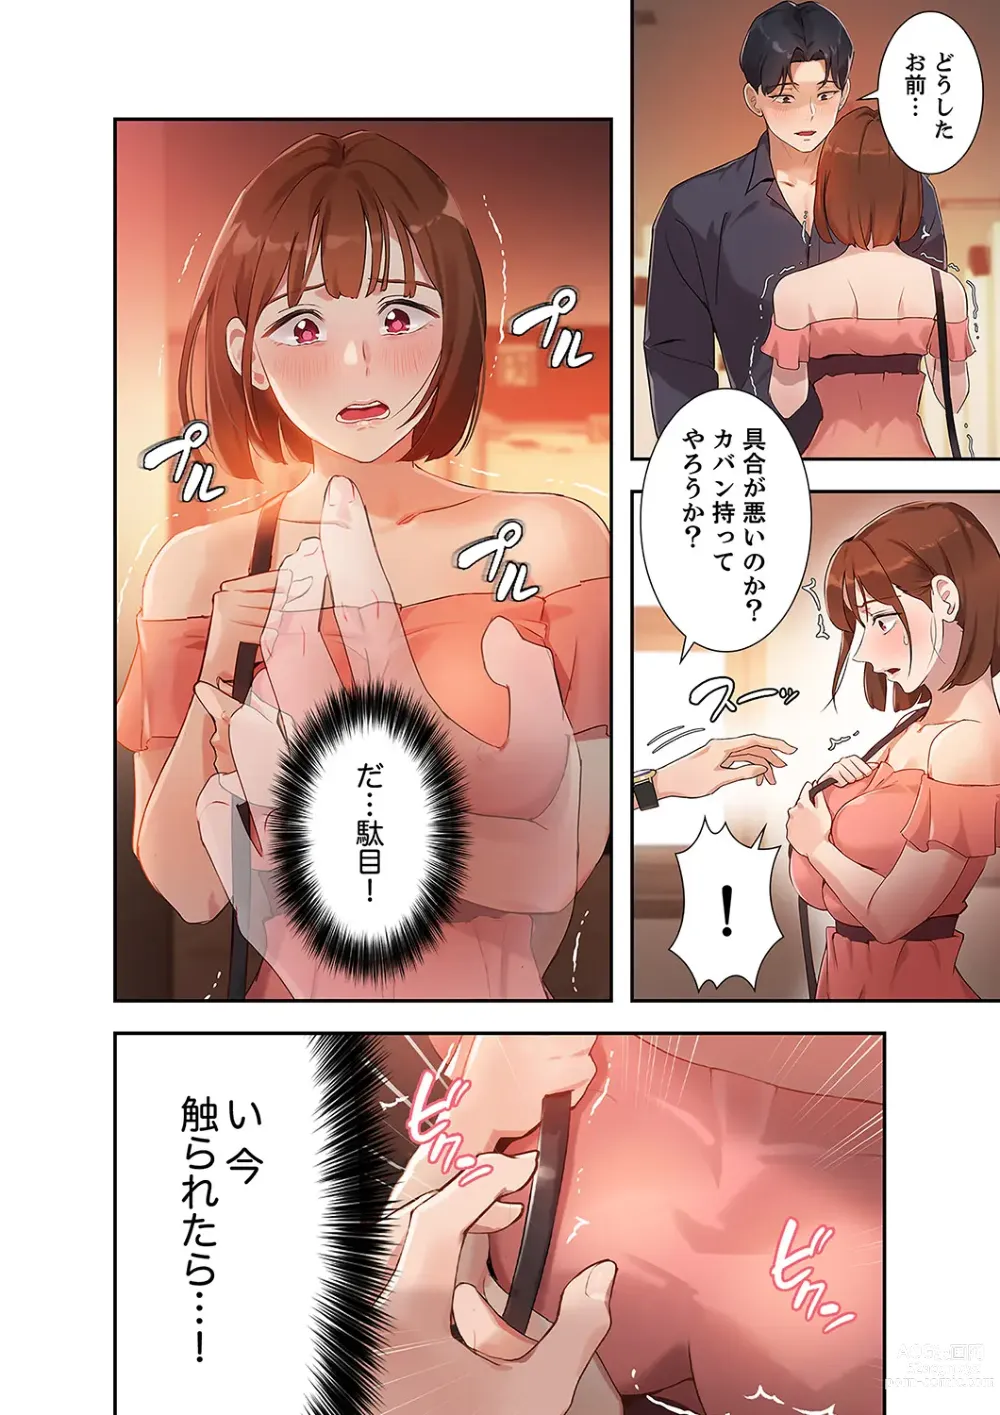 Page 146 of manga Hatachi 01